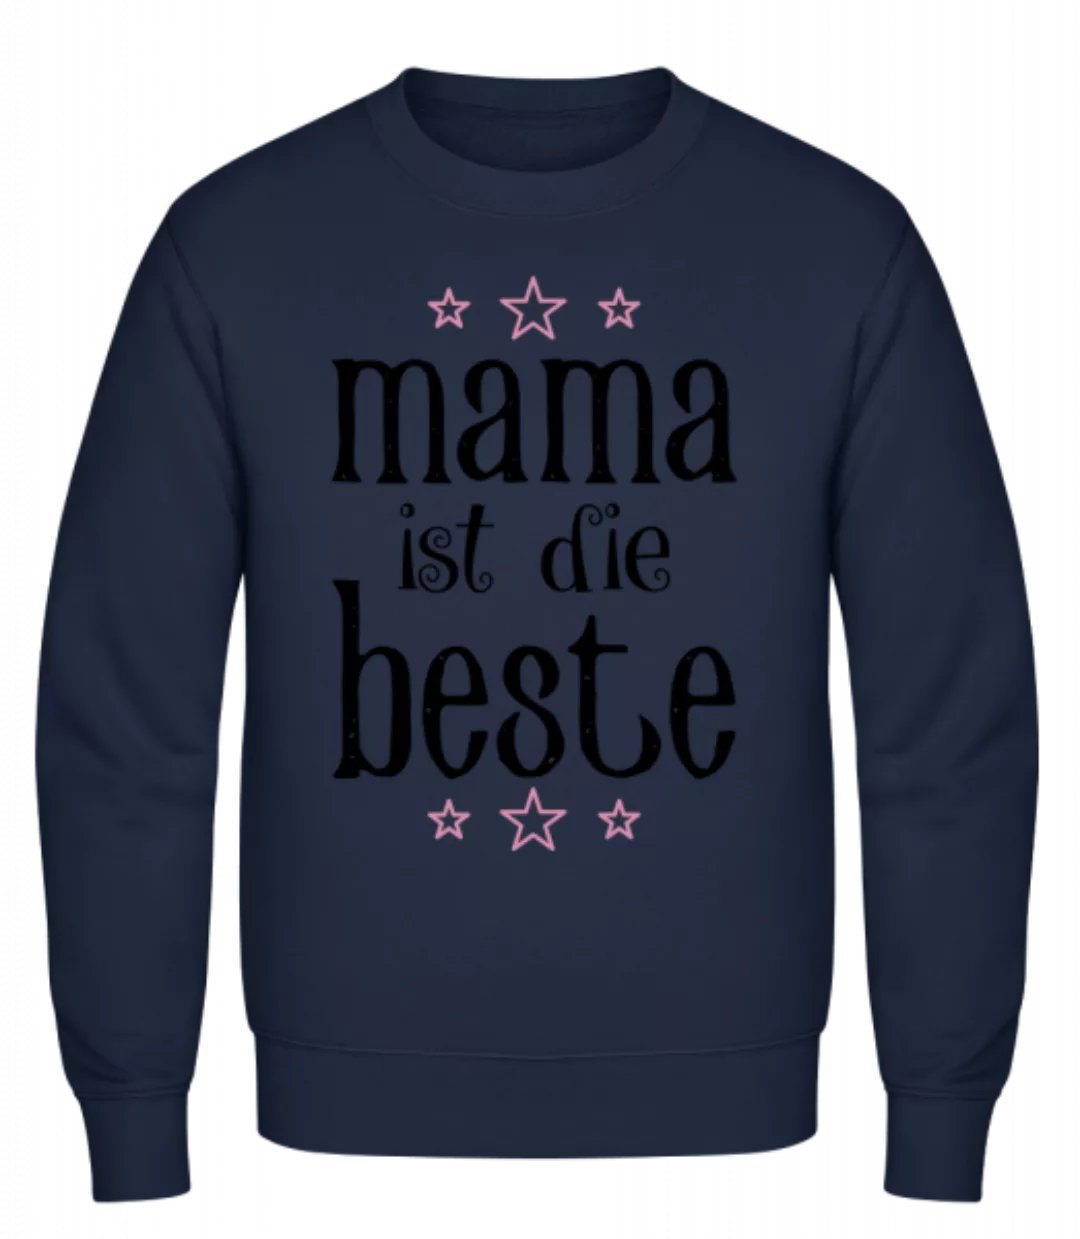 Mama Ist Die Beste · Männer Pullover günstig online kaufen